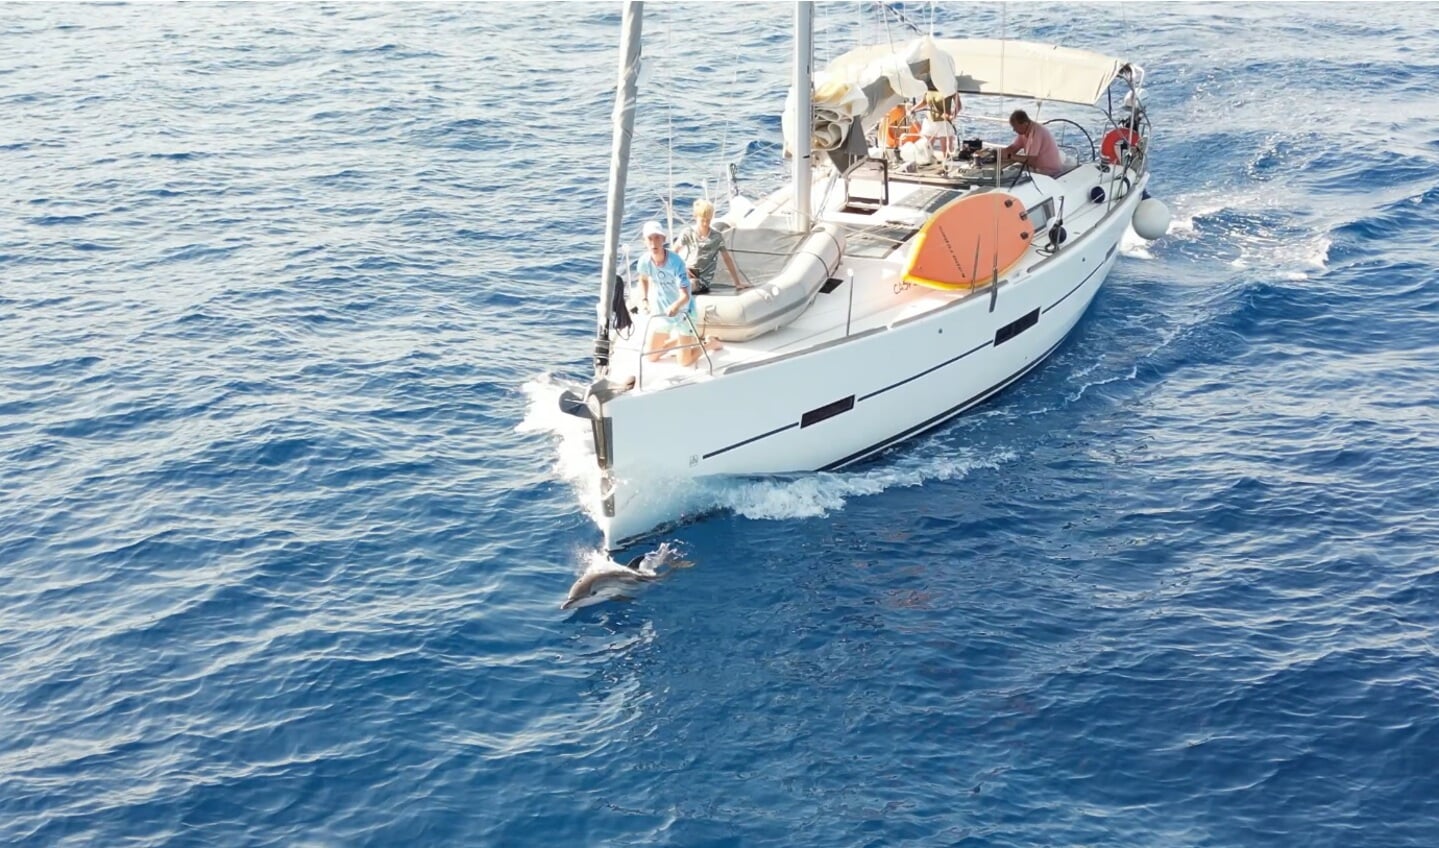 'Een dolfijn voor onze zeilboot in de buurt van Monemvasia in Griekenland, gefilmd met de drone vanaf de zeilboot.'